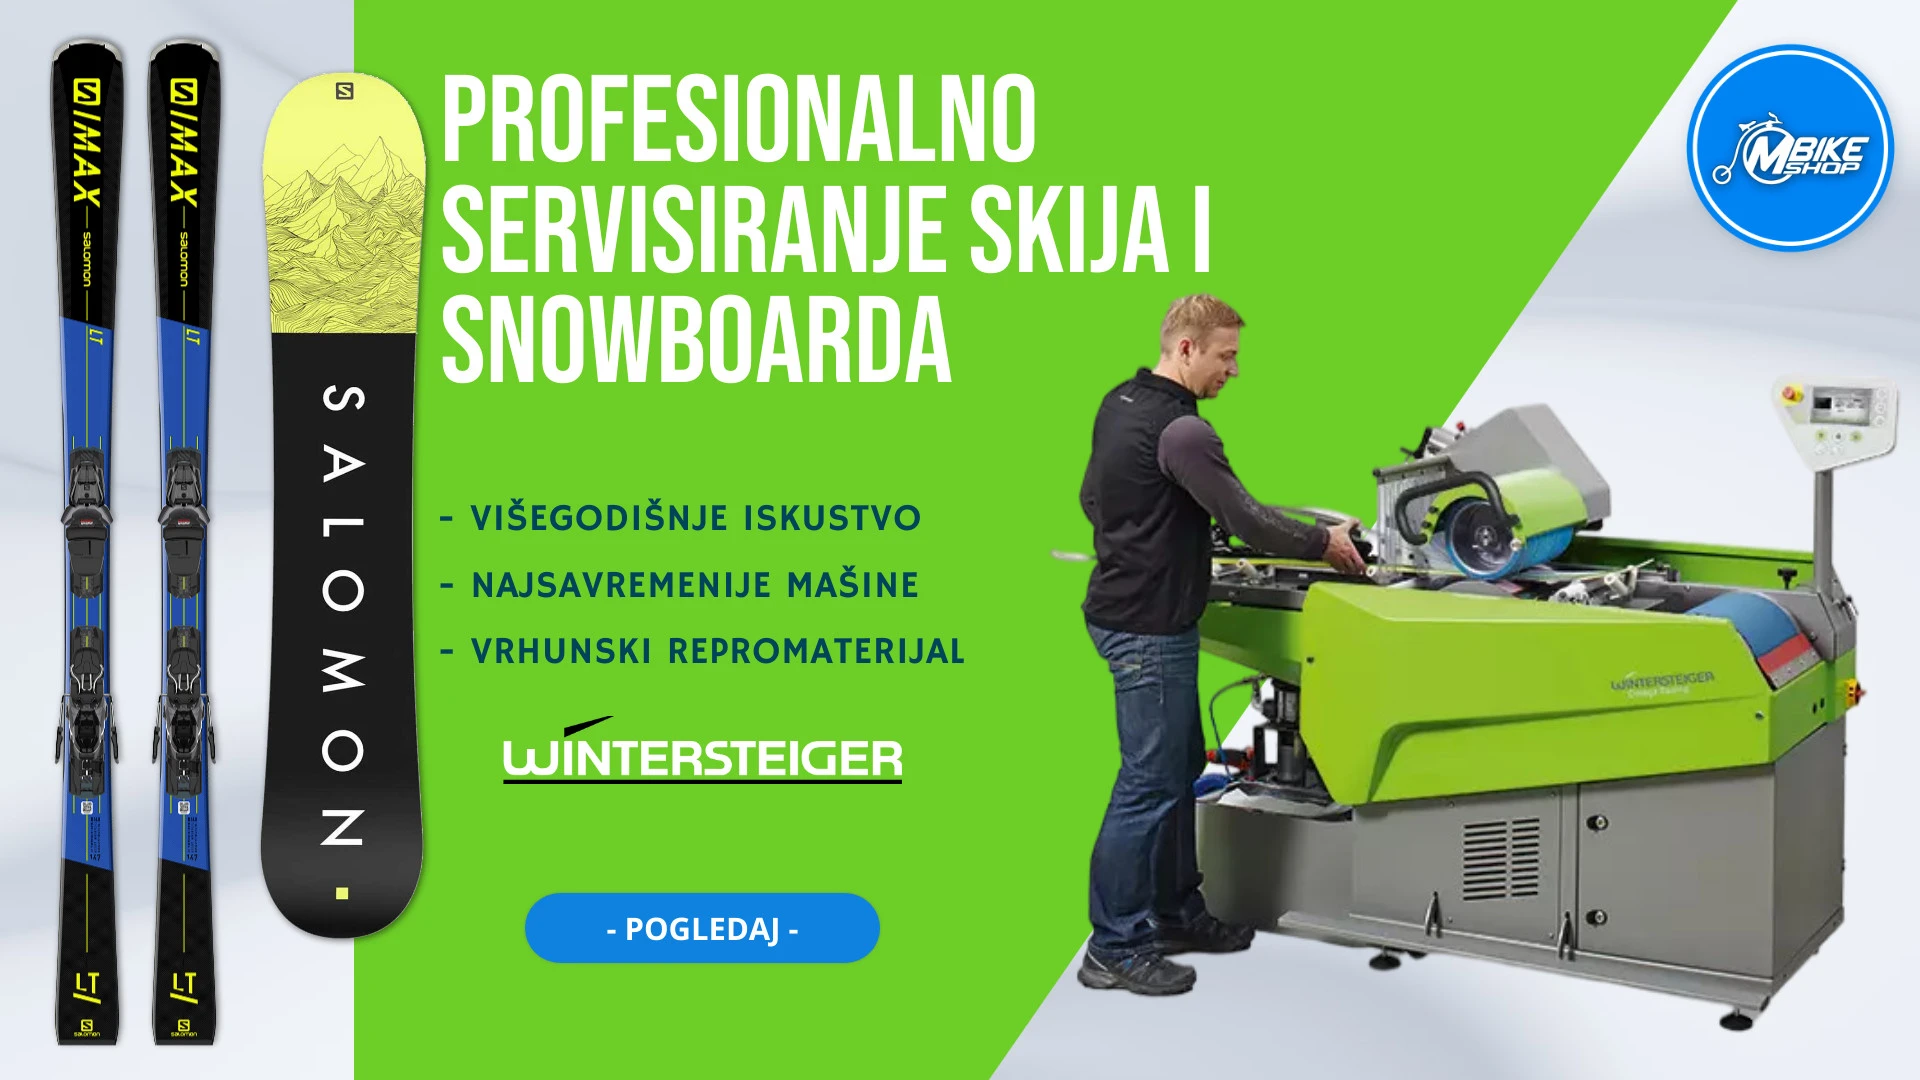 Profesionalno servisiranje skija i snowboarda u BiH